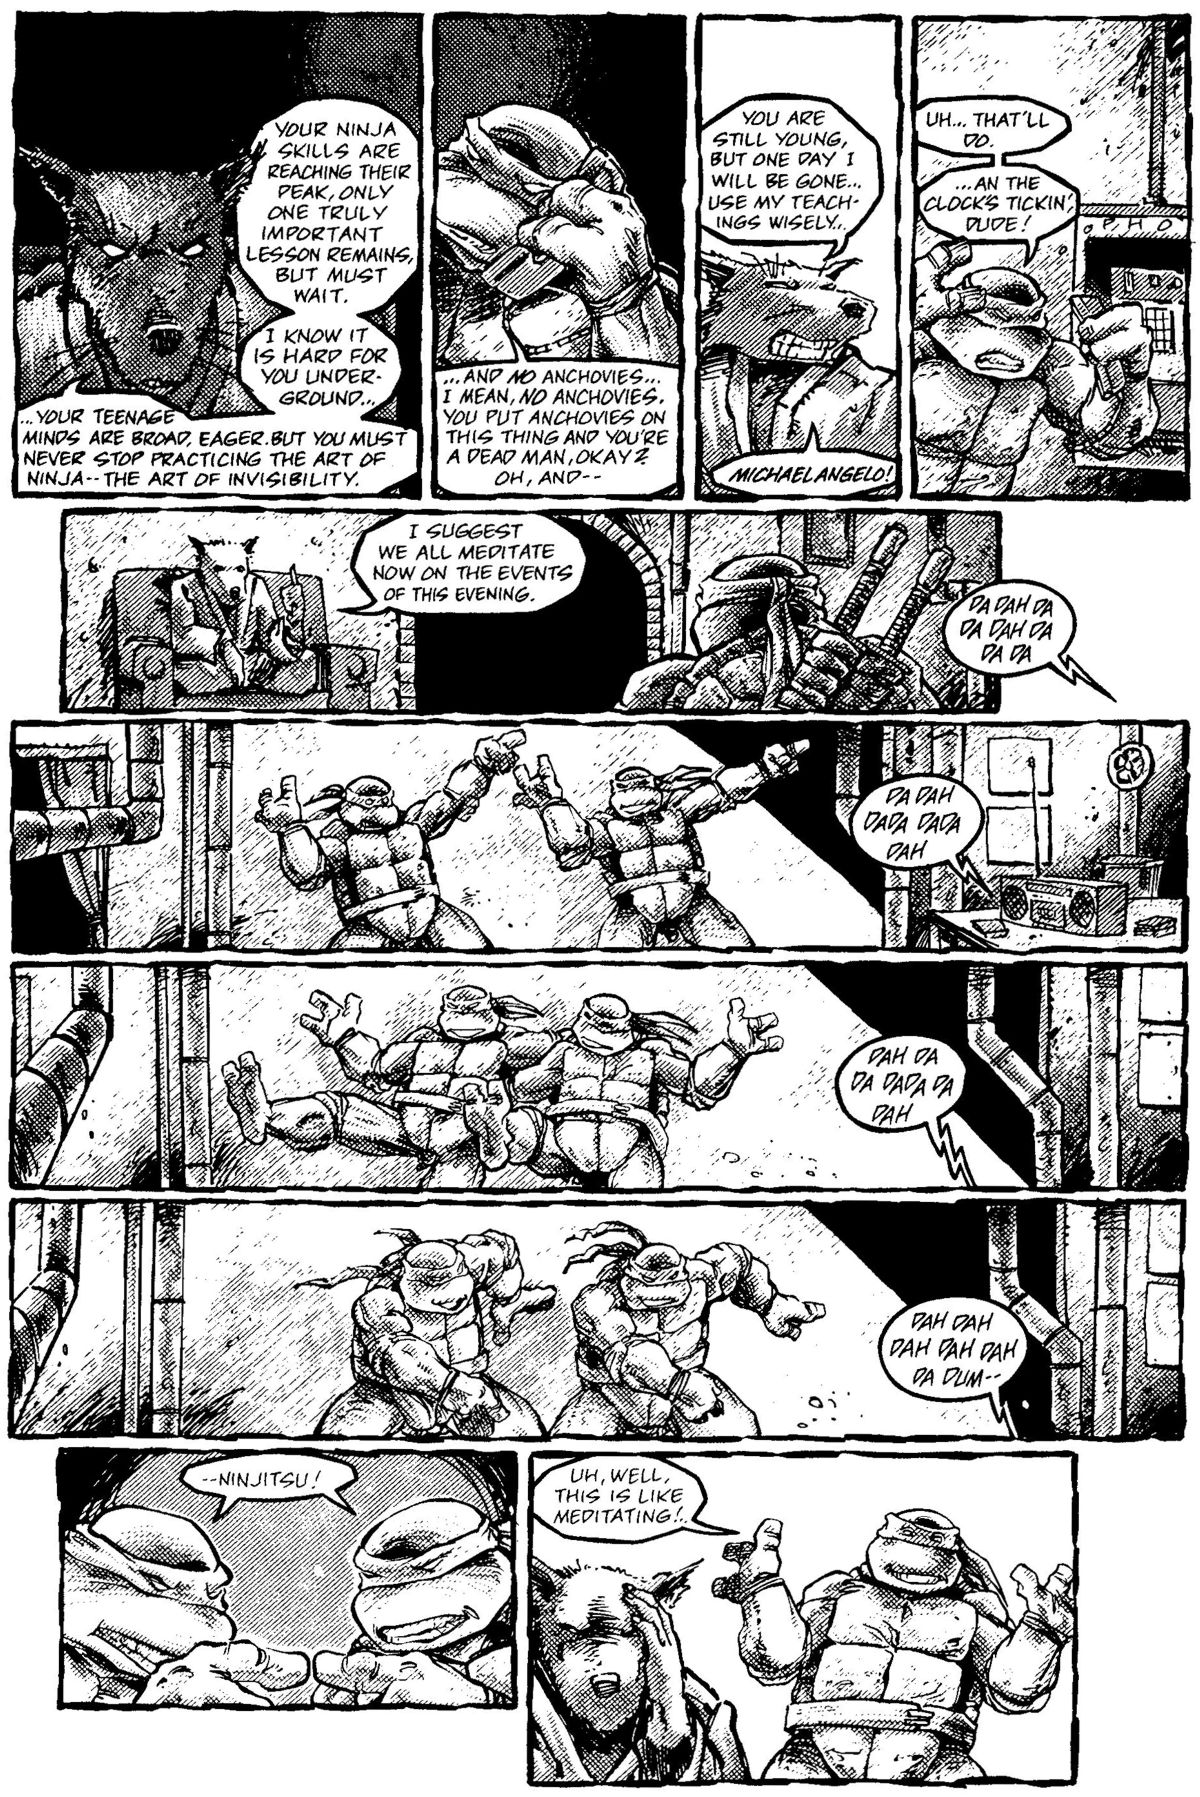 Read online Teenage Mutant Ninja Turtles: The Movie comic -  Issue # Full - 14